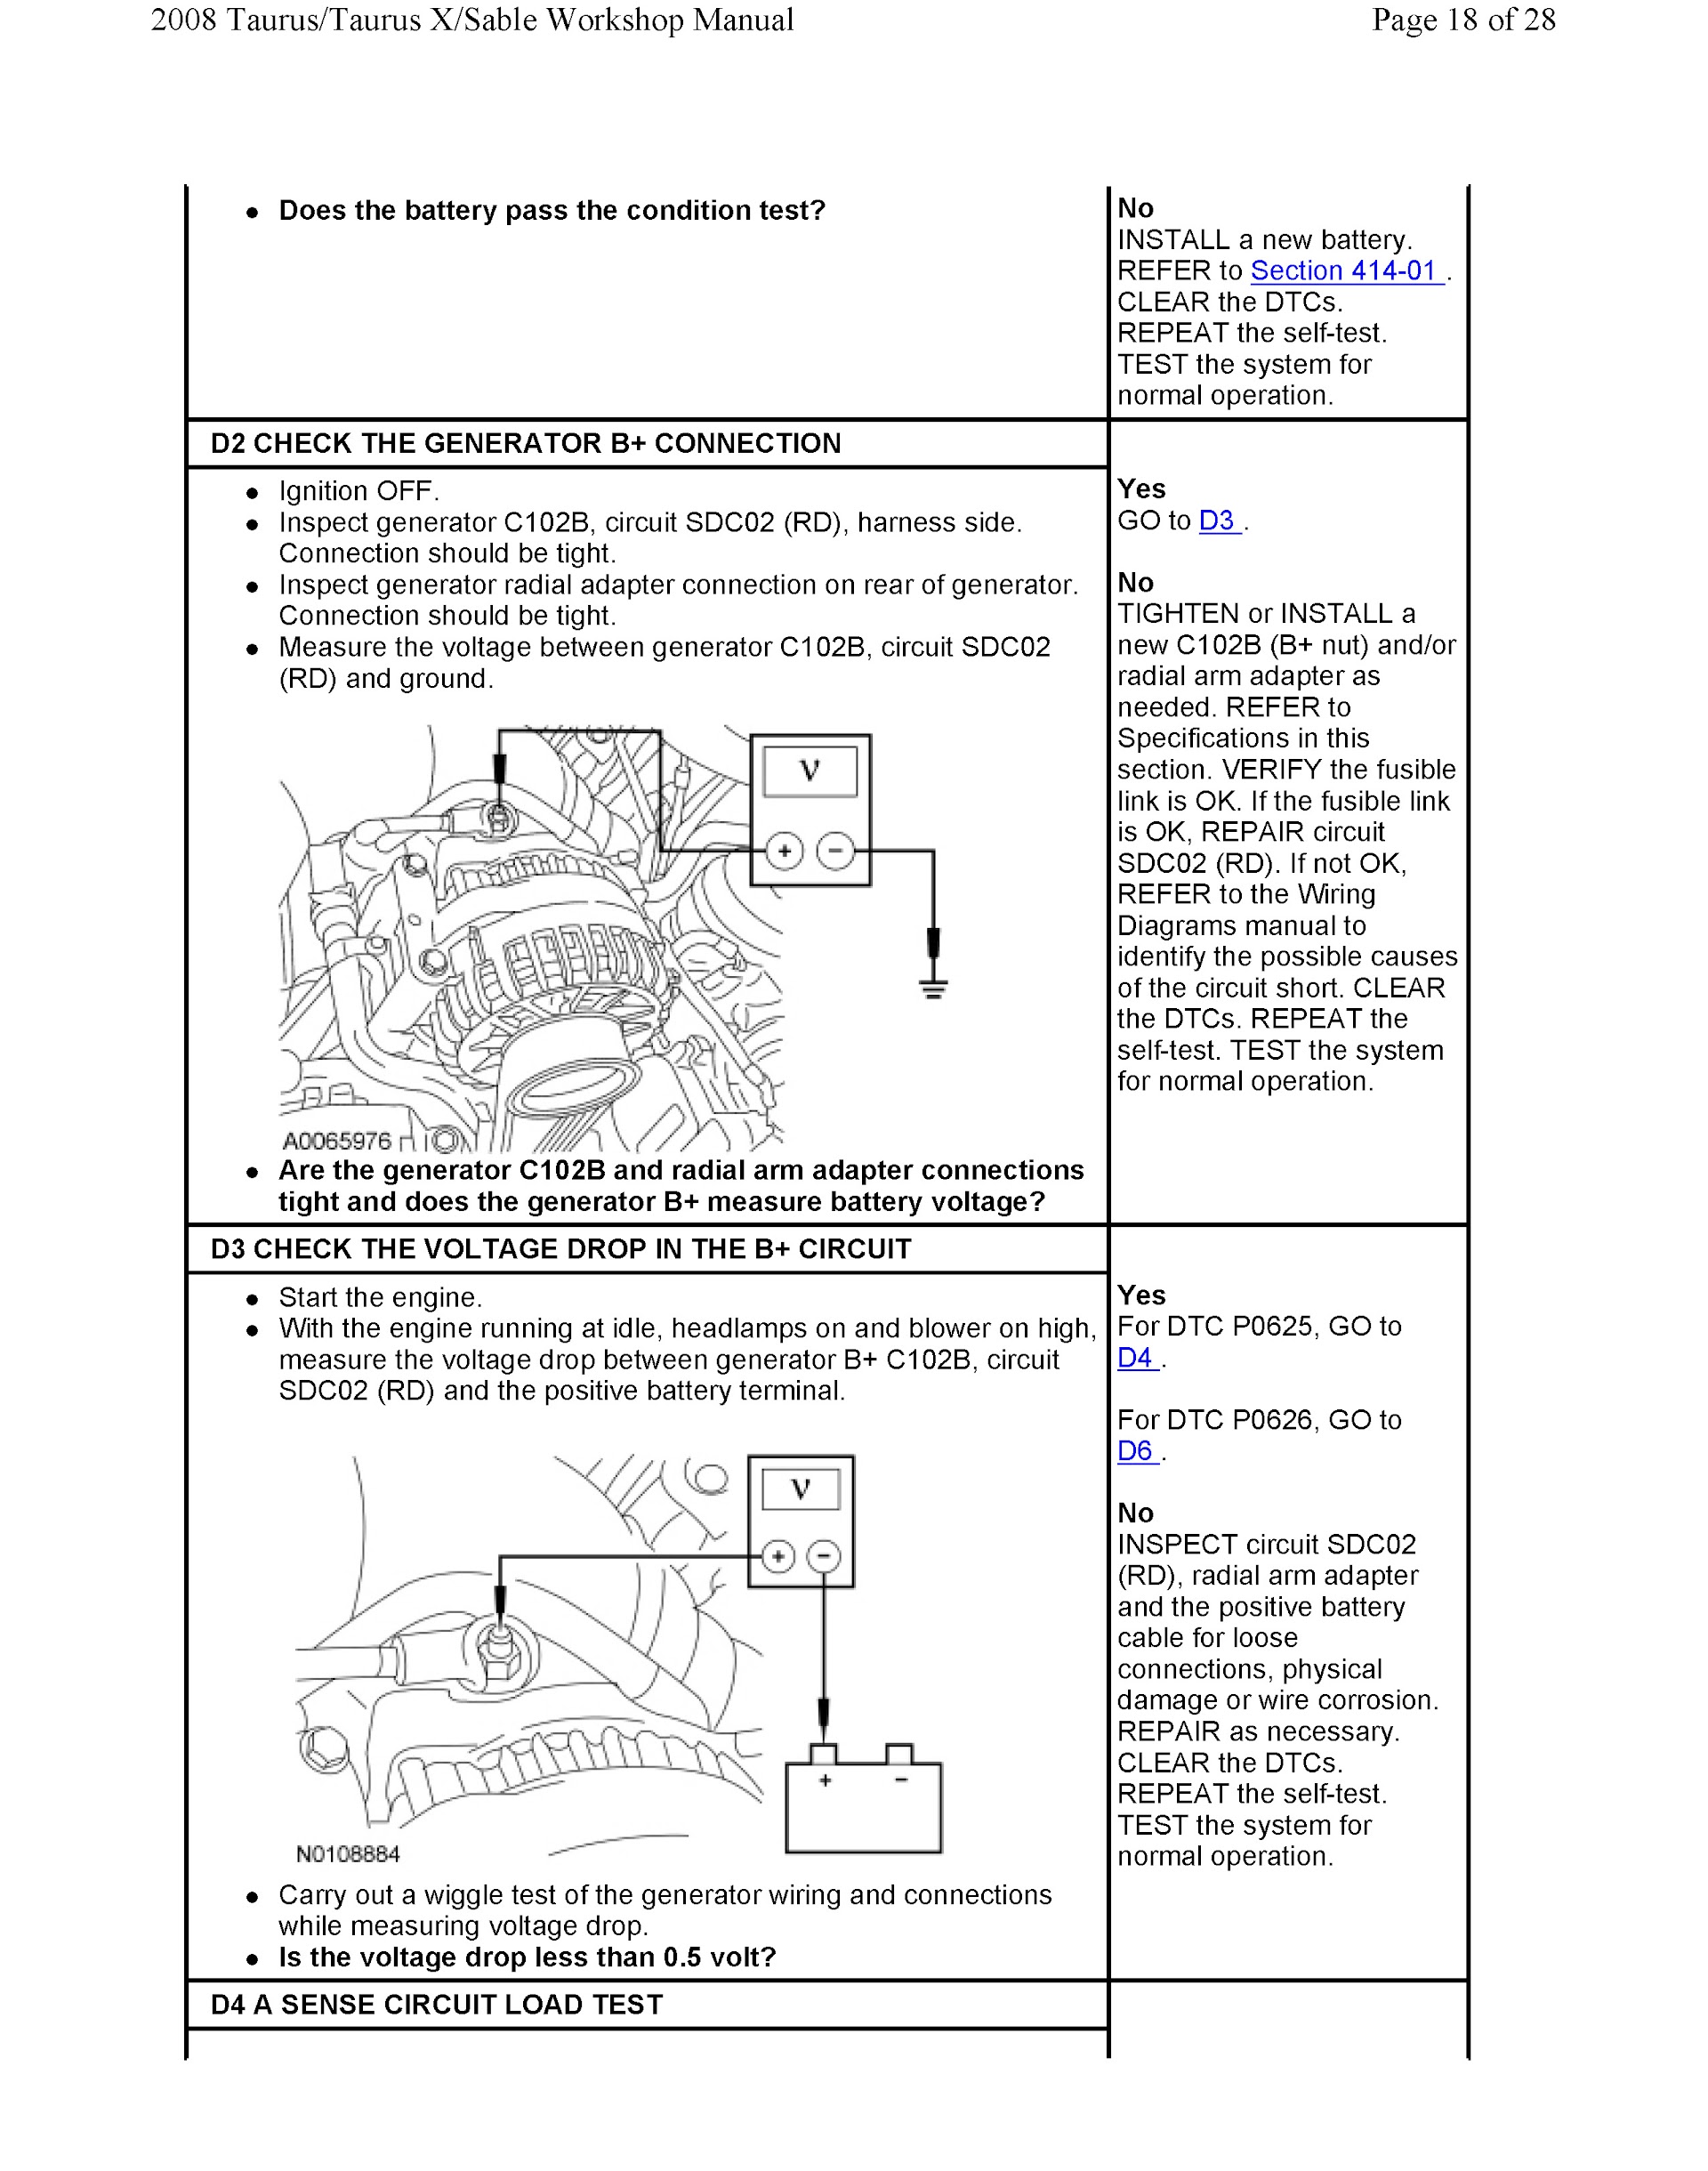 2008 Ford Taurus Repair Manual